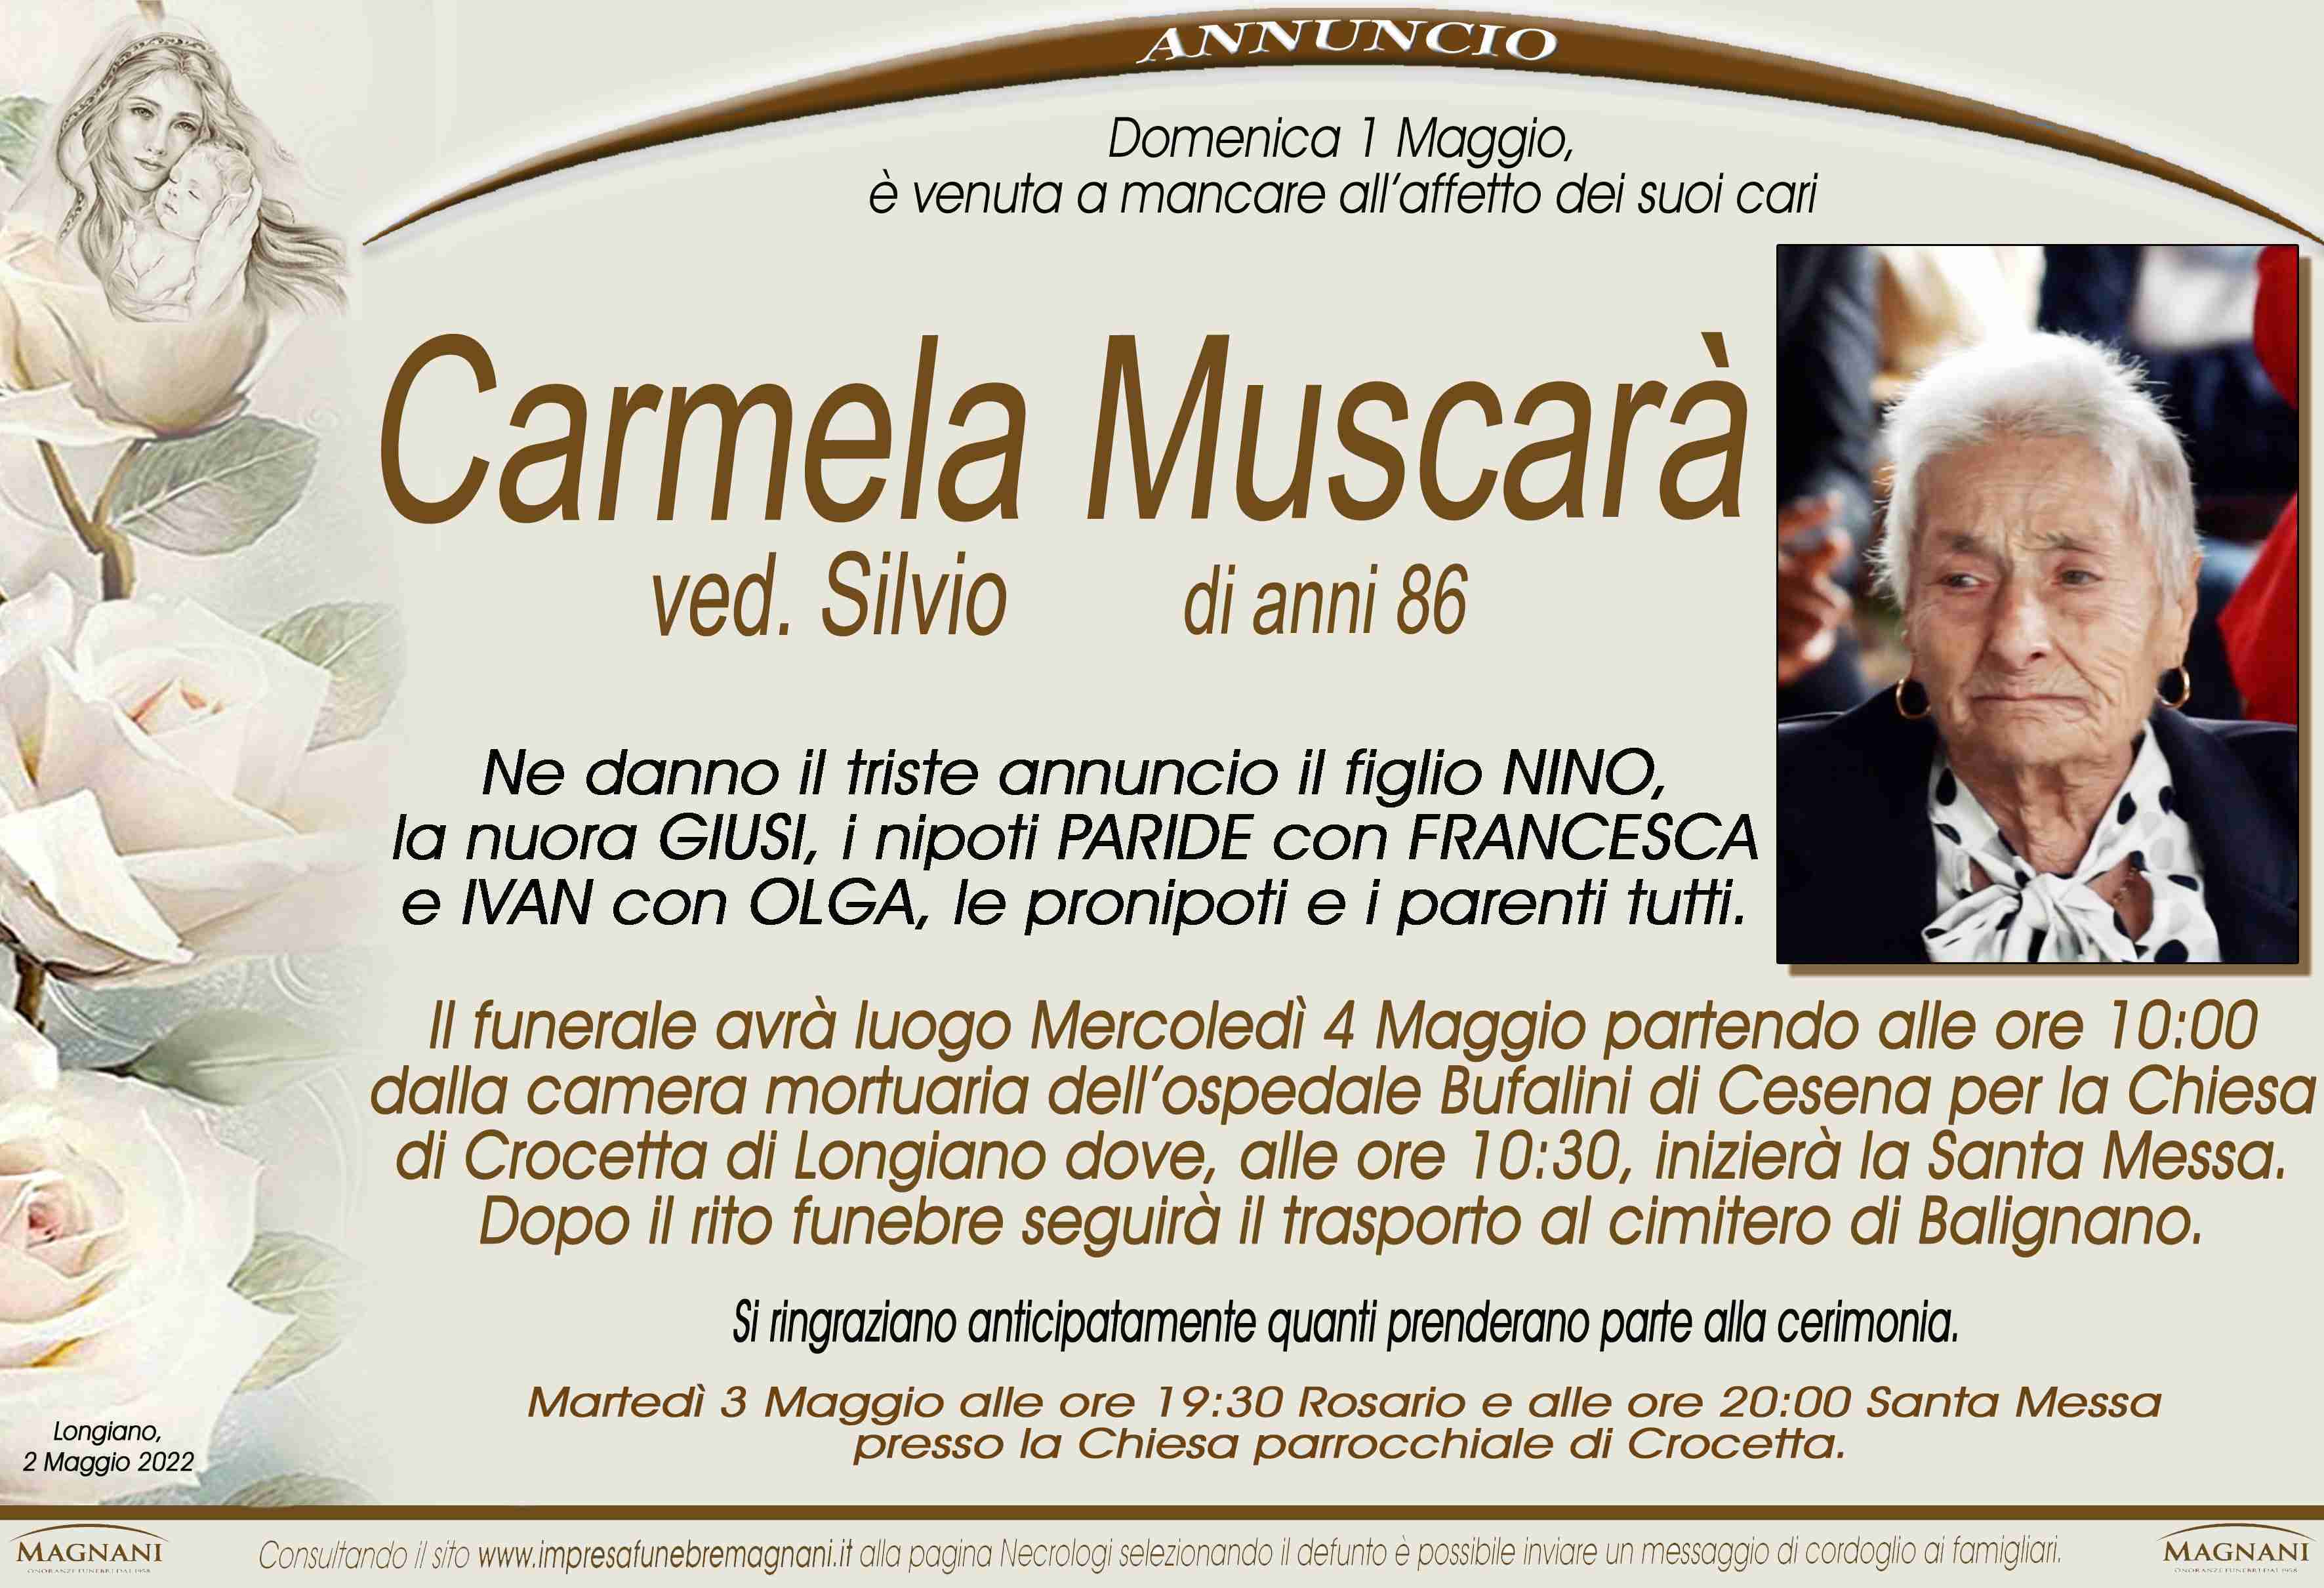 Carmela Muscarà